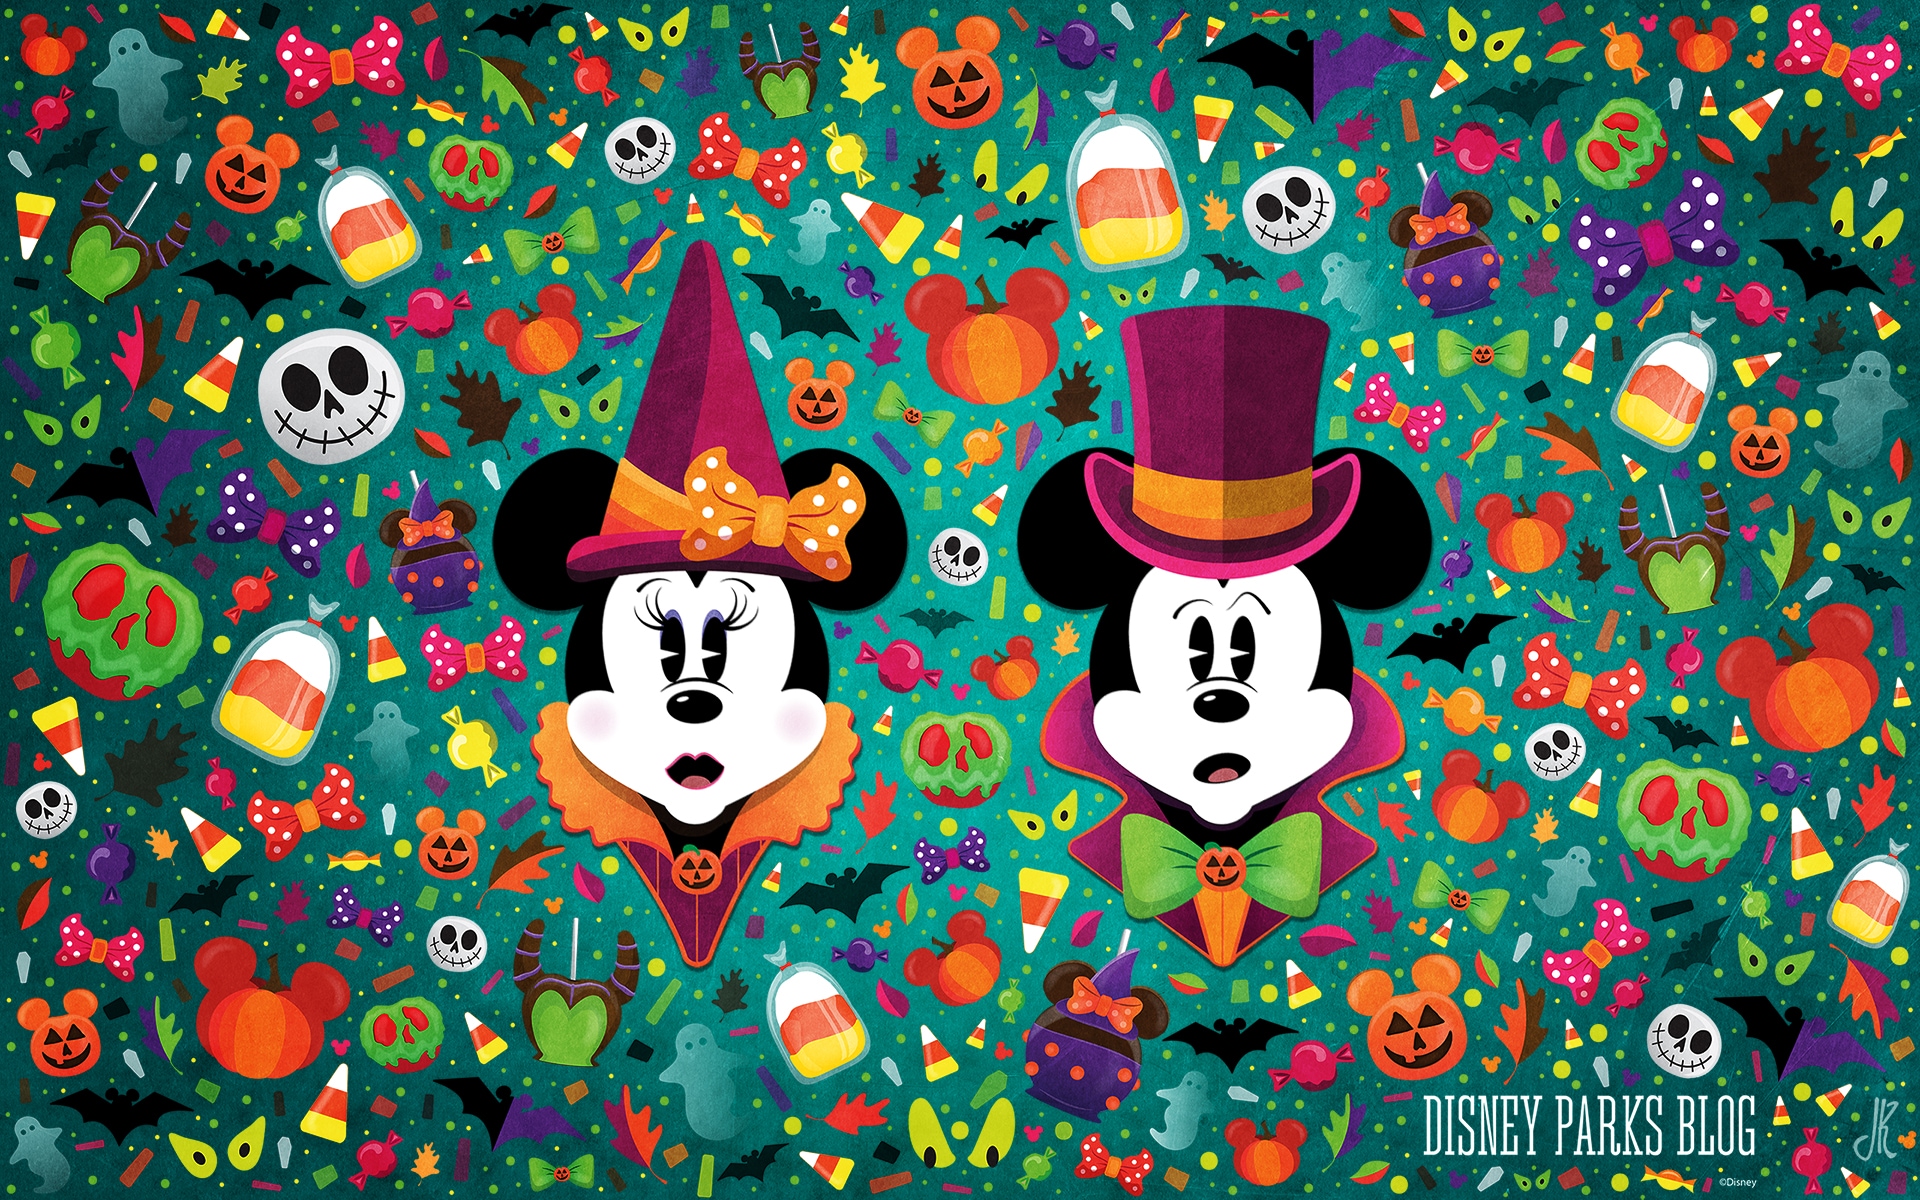 Disney Halloween Wallpaper từ những thước phim hoạt hình kinh điển, đến các nhân vật phim hài hước, sẽ giúp cho bạn đắm chìm trong không gian lễ hội Halloween đầy màu sắc và vui nhộn. Với những hình ảnh được thiết kế theo phong cách Disney, bạn sẽ cảm thấy vô cùng thích thú và hứng khởi khi ngắm nhìn những tấm ảnh này.